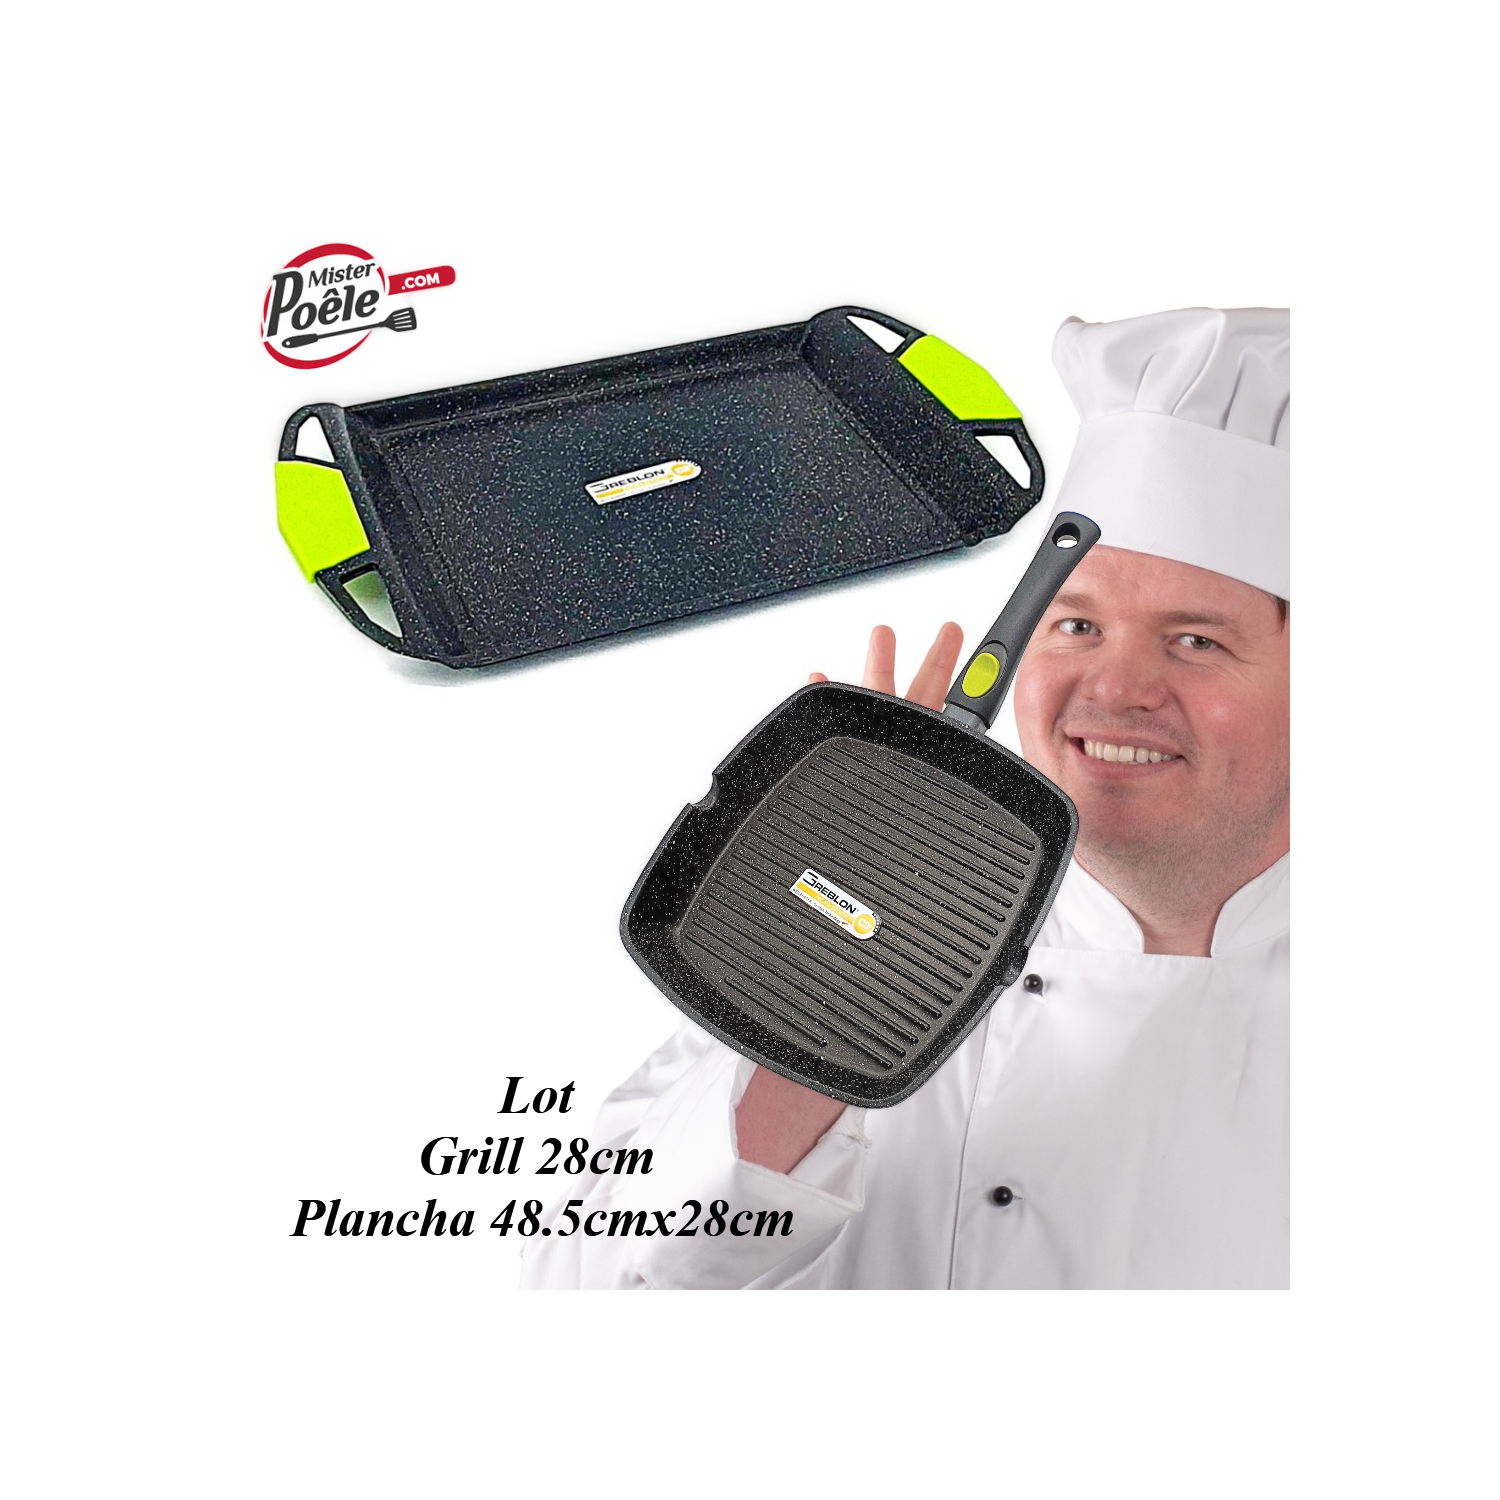 Grill 28cm Plancha 48.5cmx28cm Espace Cuisine Professionnel